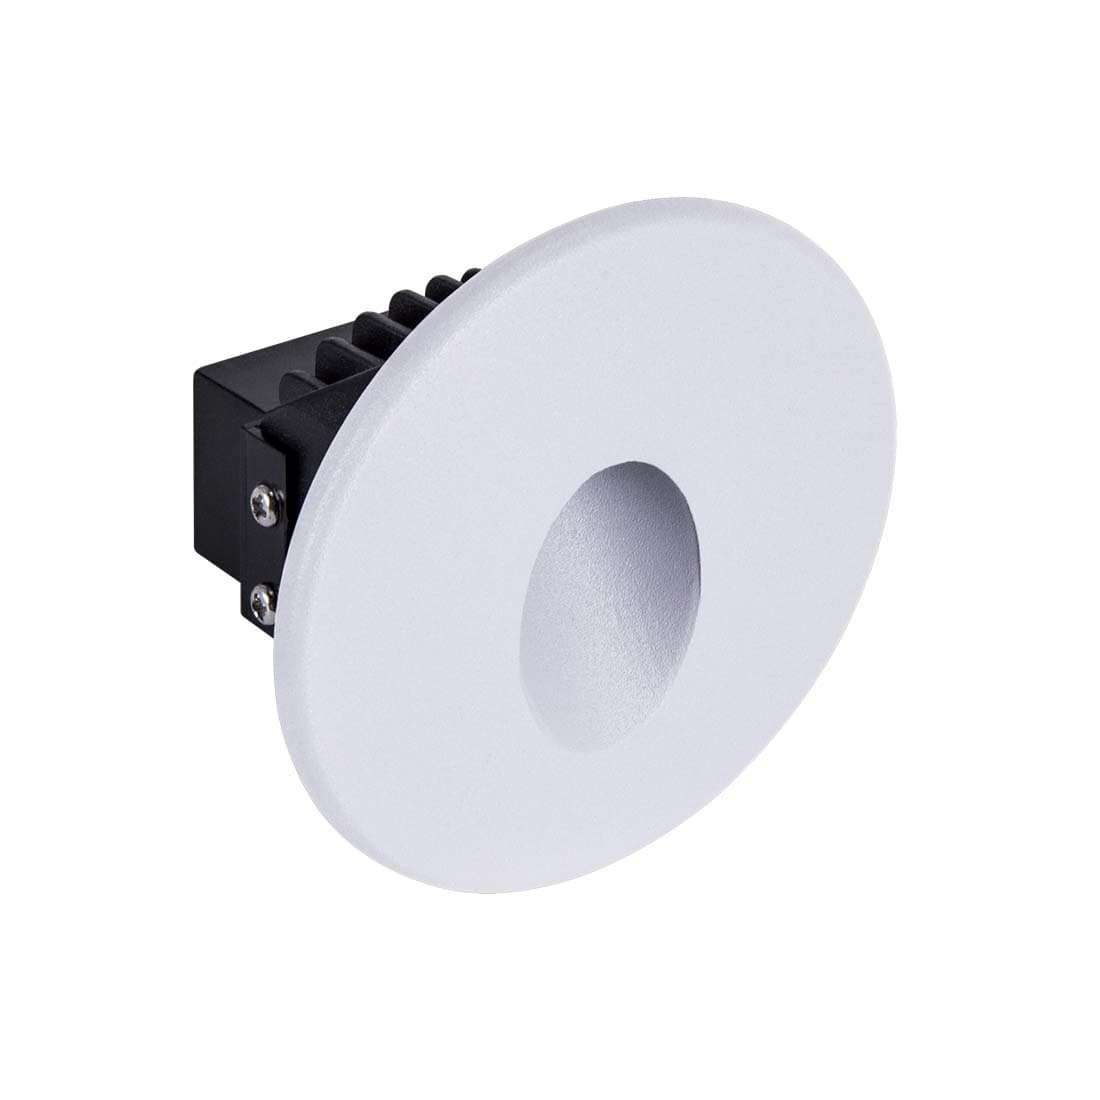 Trappebelysning - Væg Spot - Hvid - 70lm - IP54 - 4000K - LED (03905)